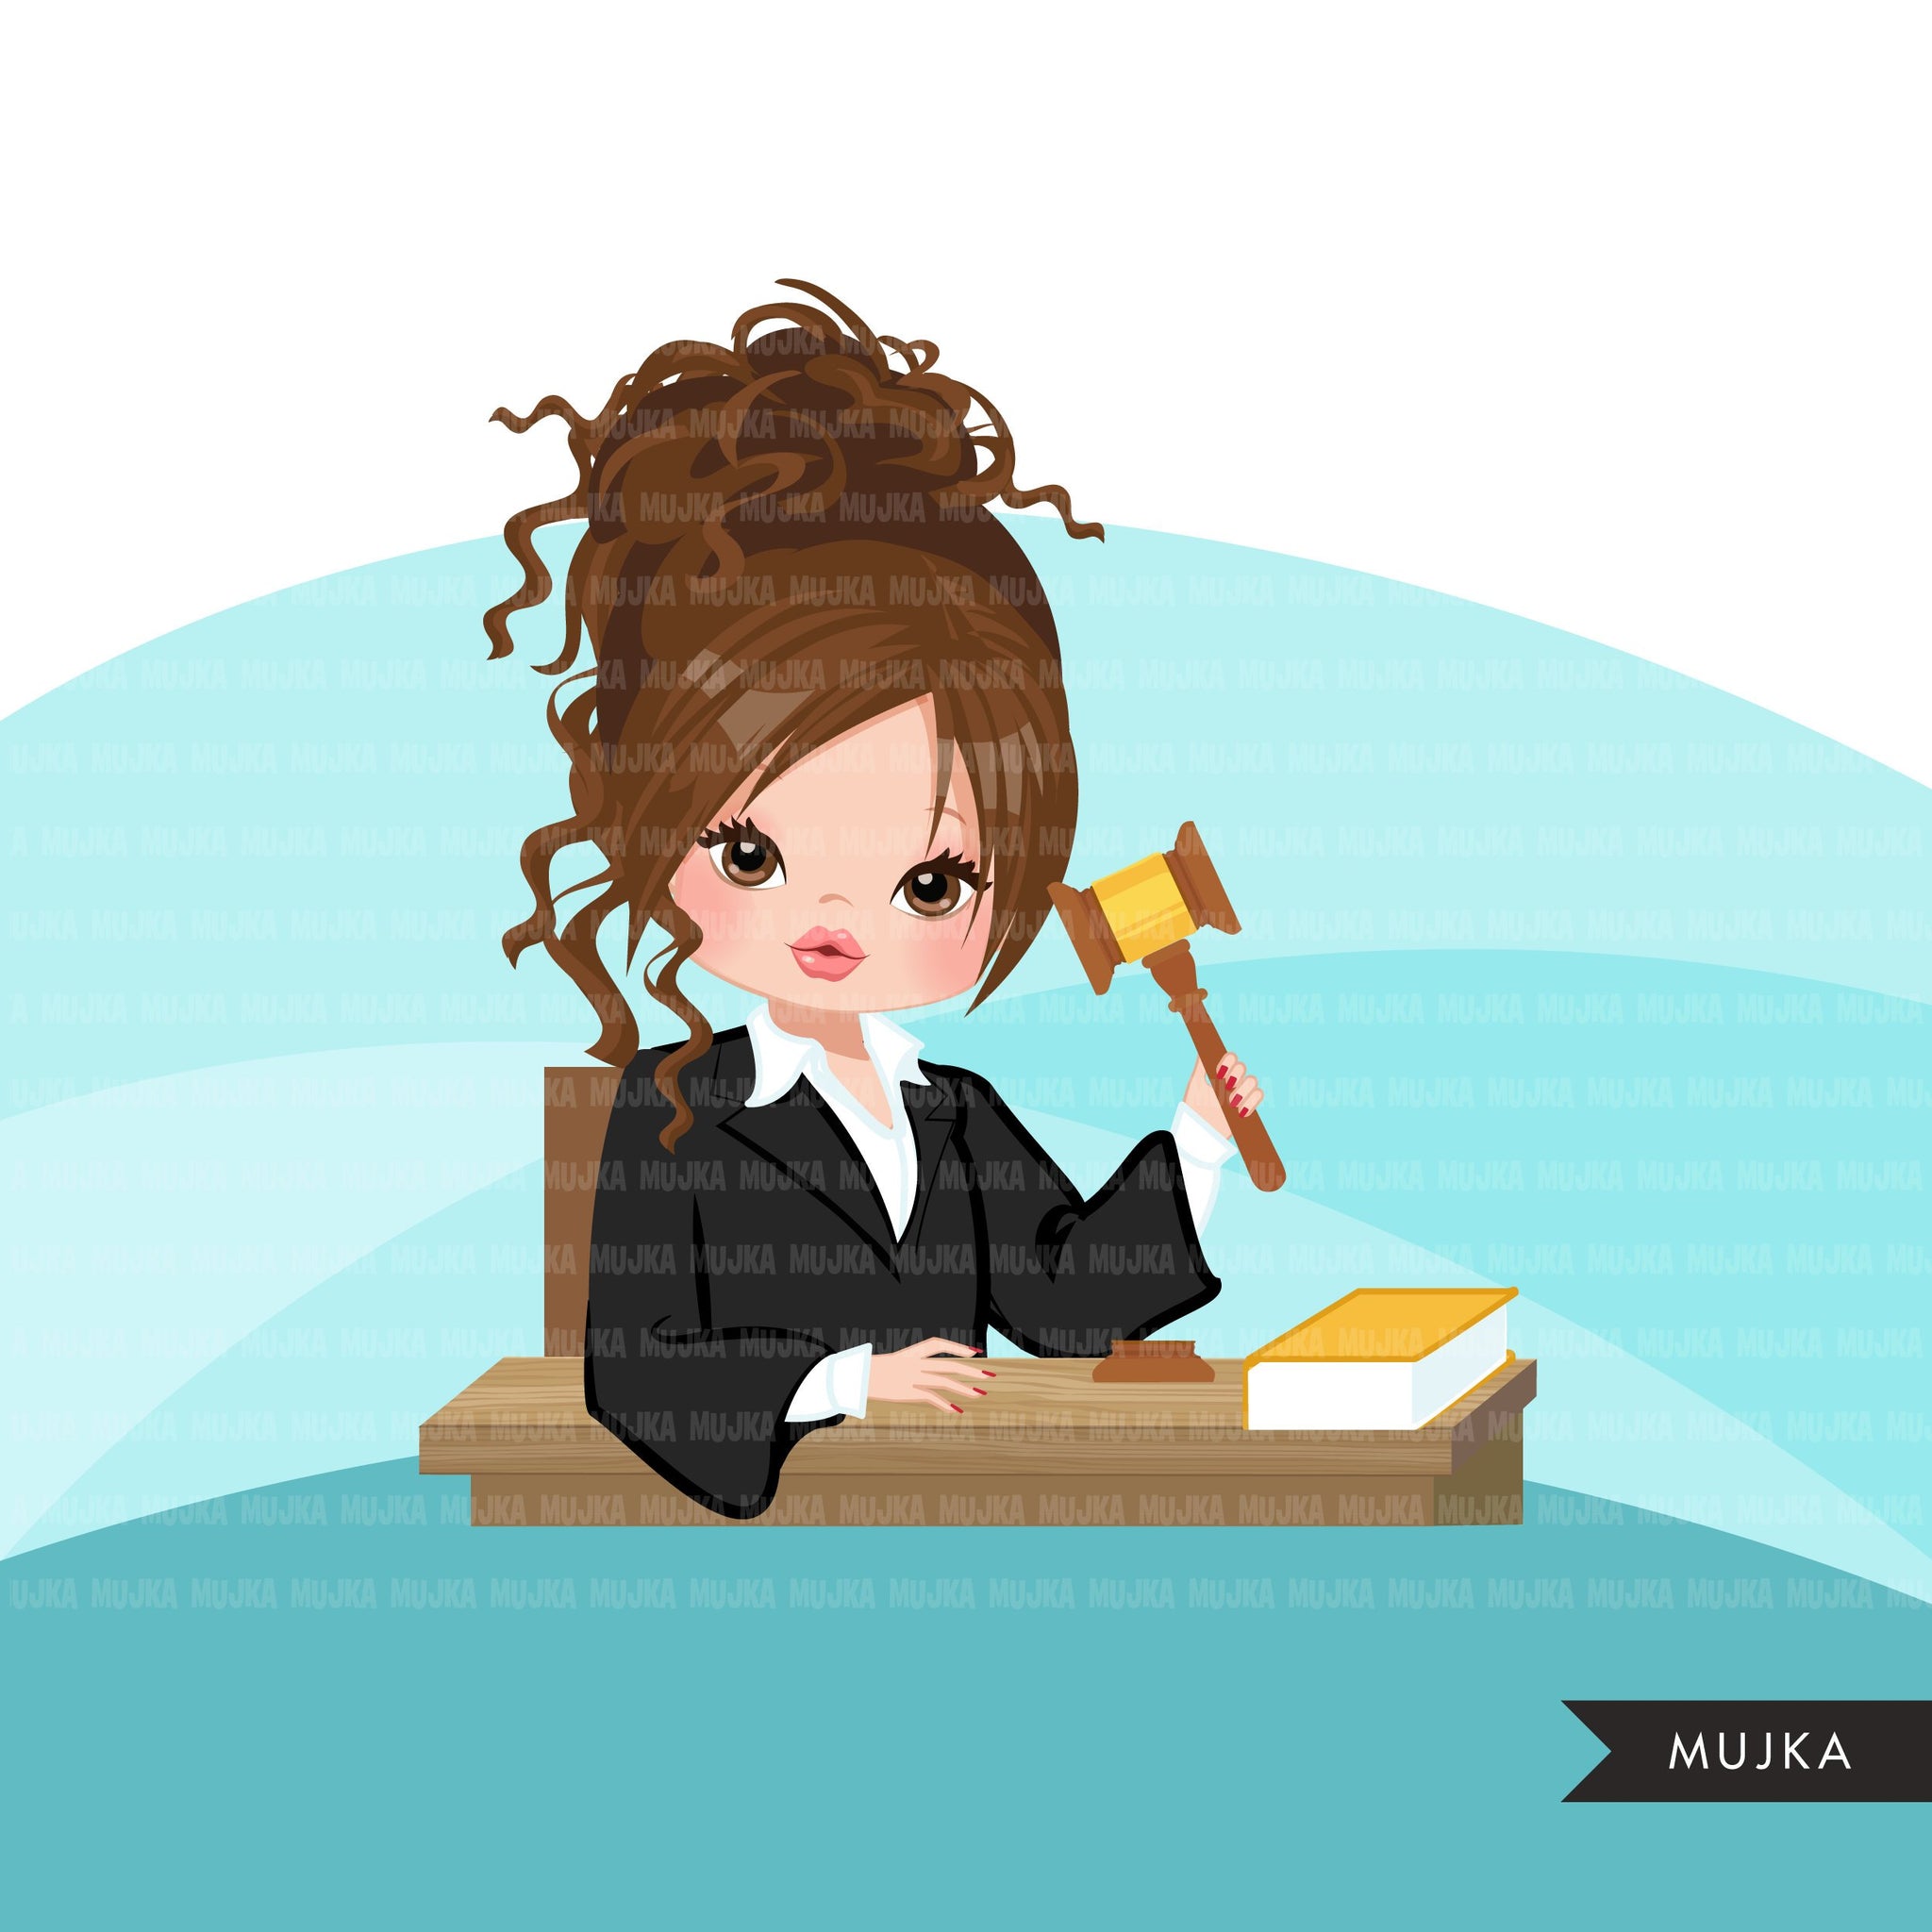 Mujer juez avatar clipart con mazo y libro de derecho, impresión y corte, clip art de la chica de la justicia, tribunal de justicia